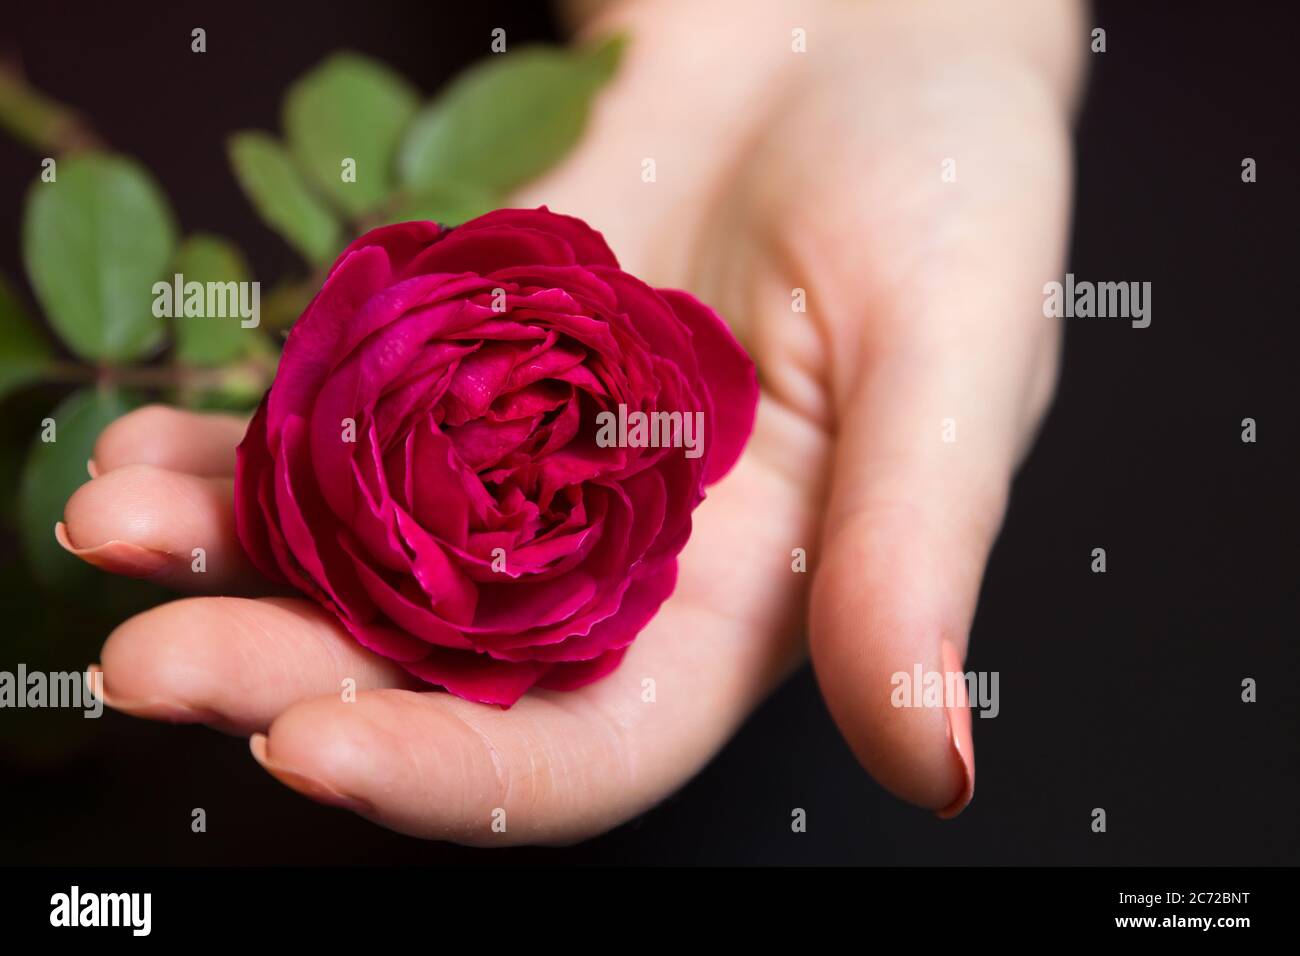 Bella rosa rossa in una mano femminile su uno sfondo nero Foto Stock